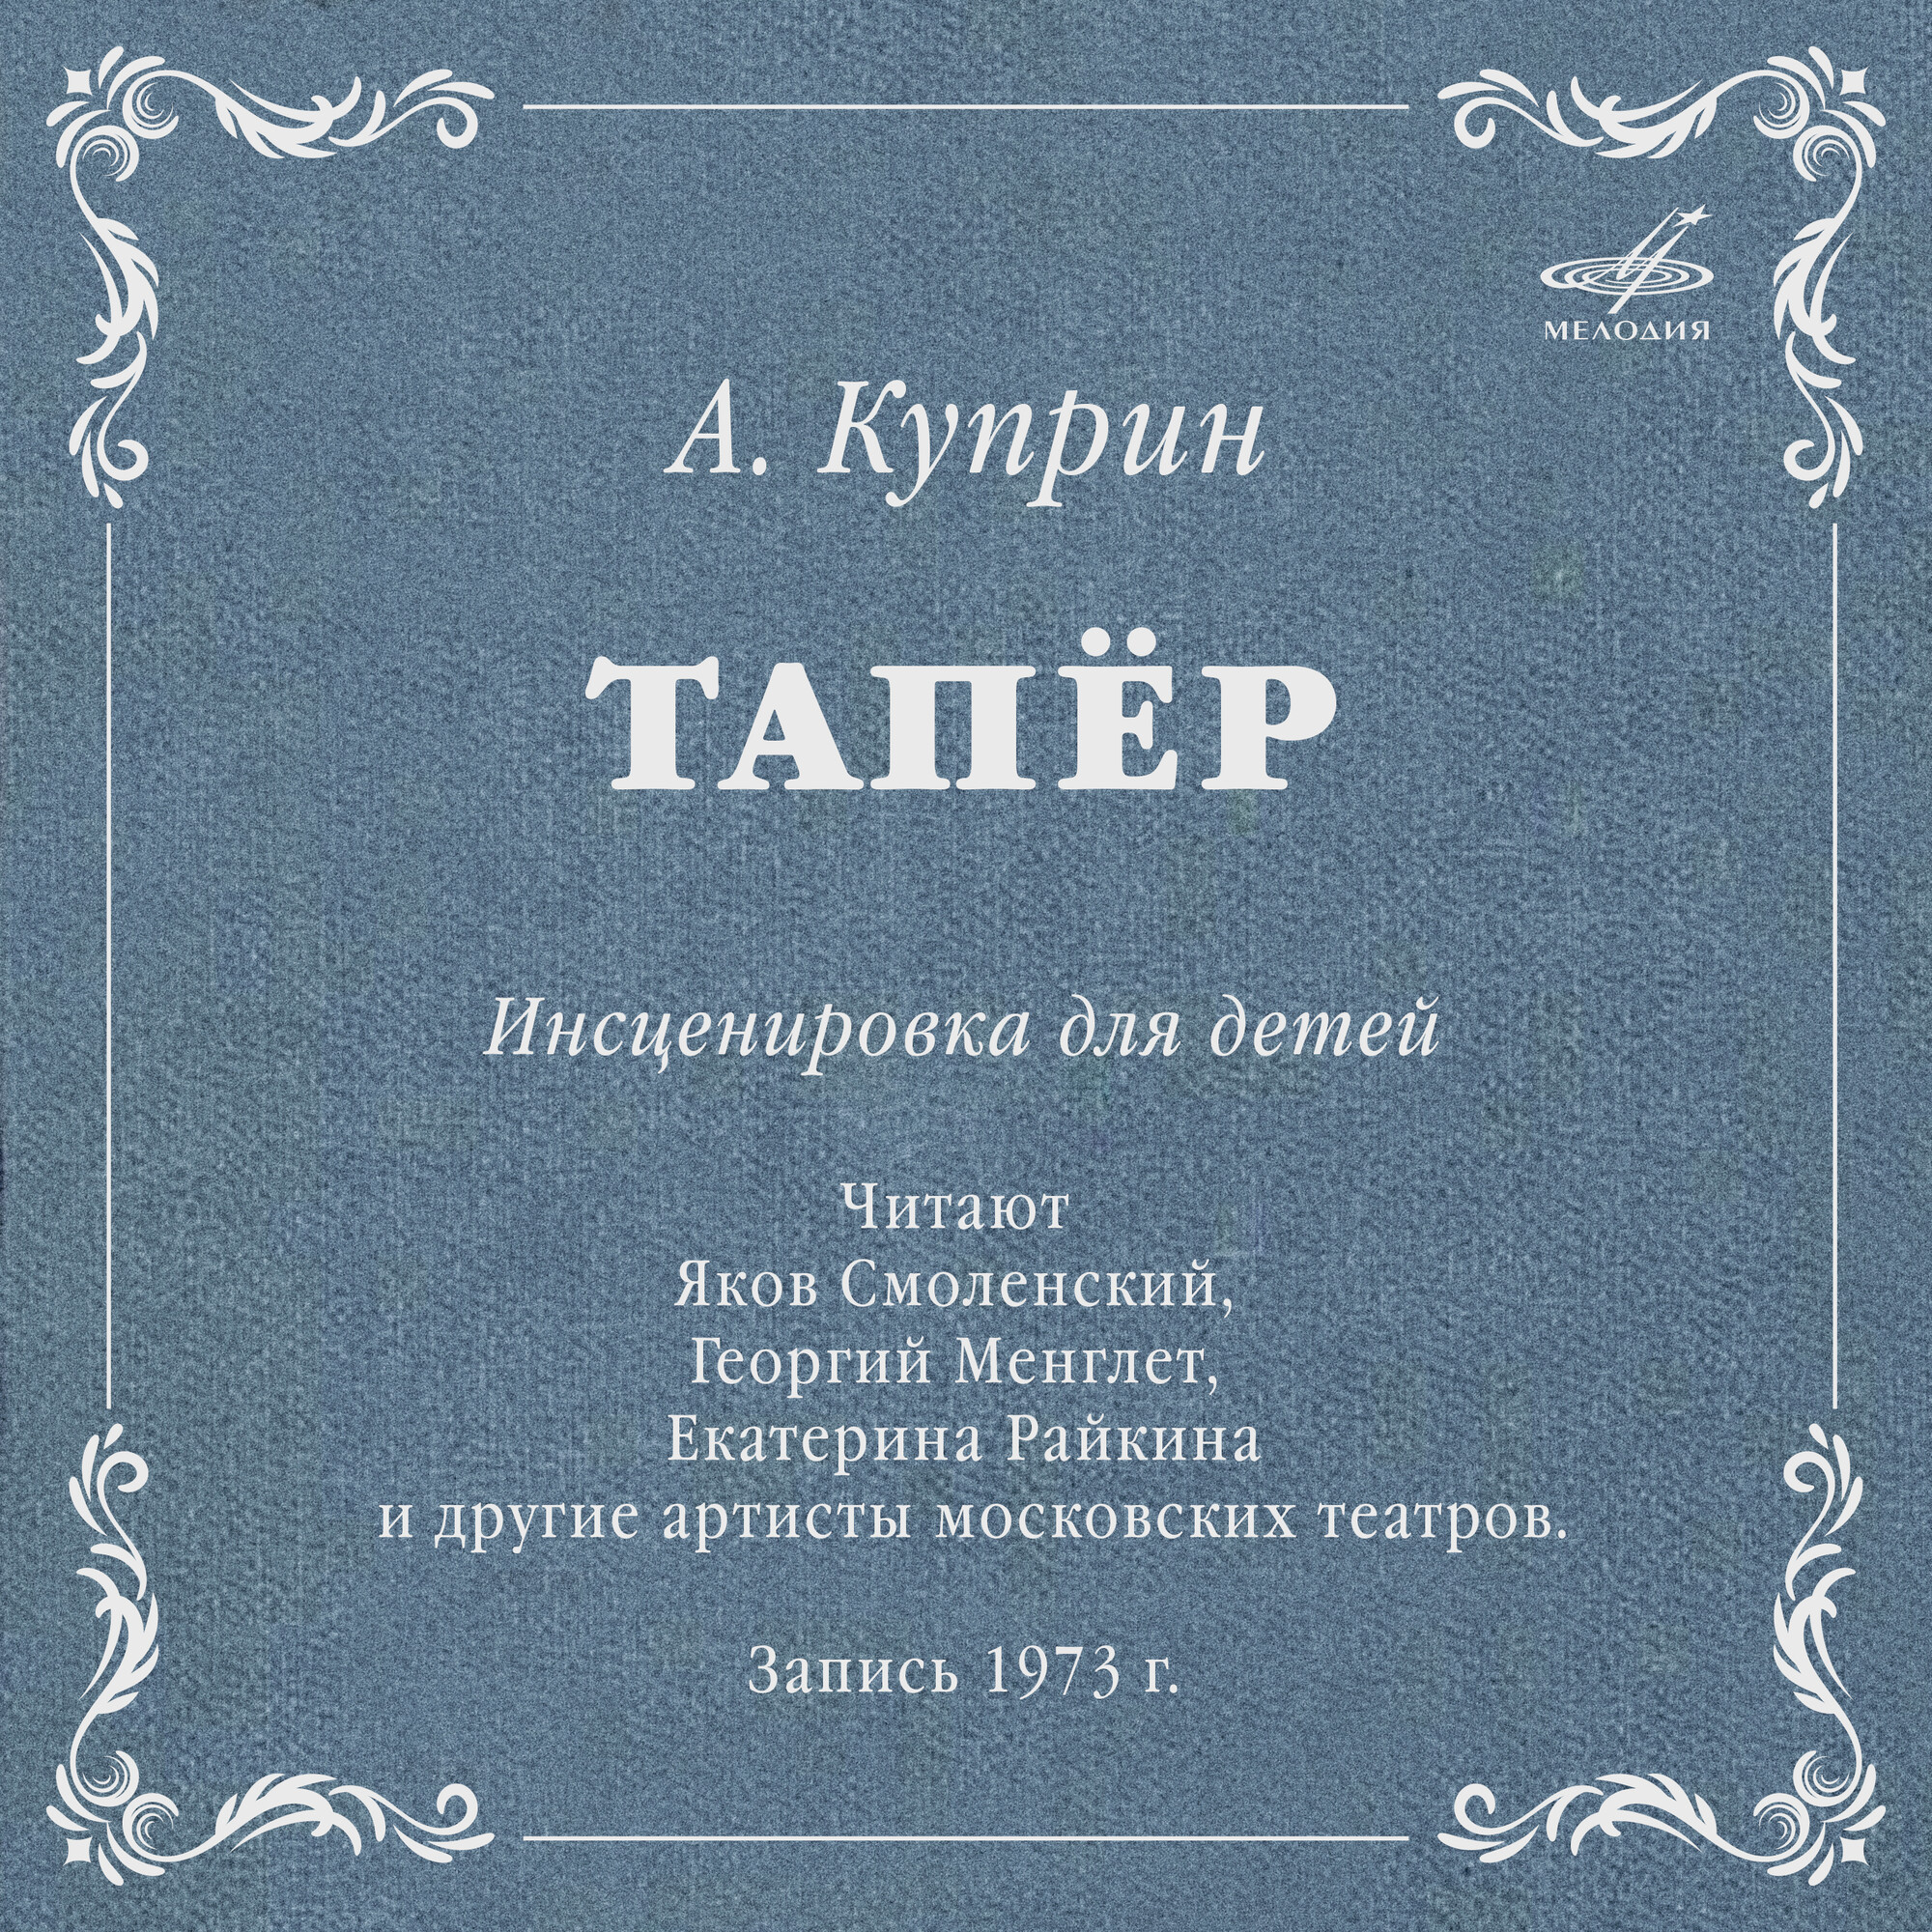 Александр Куприн: Тапёр (инсценировка)